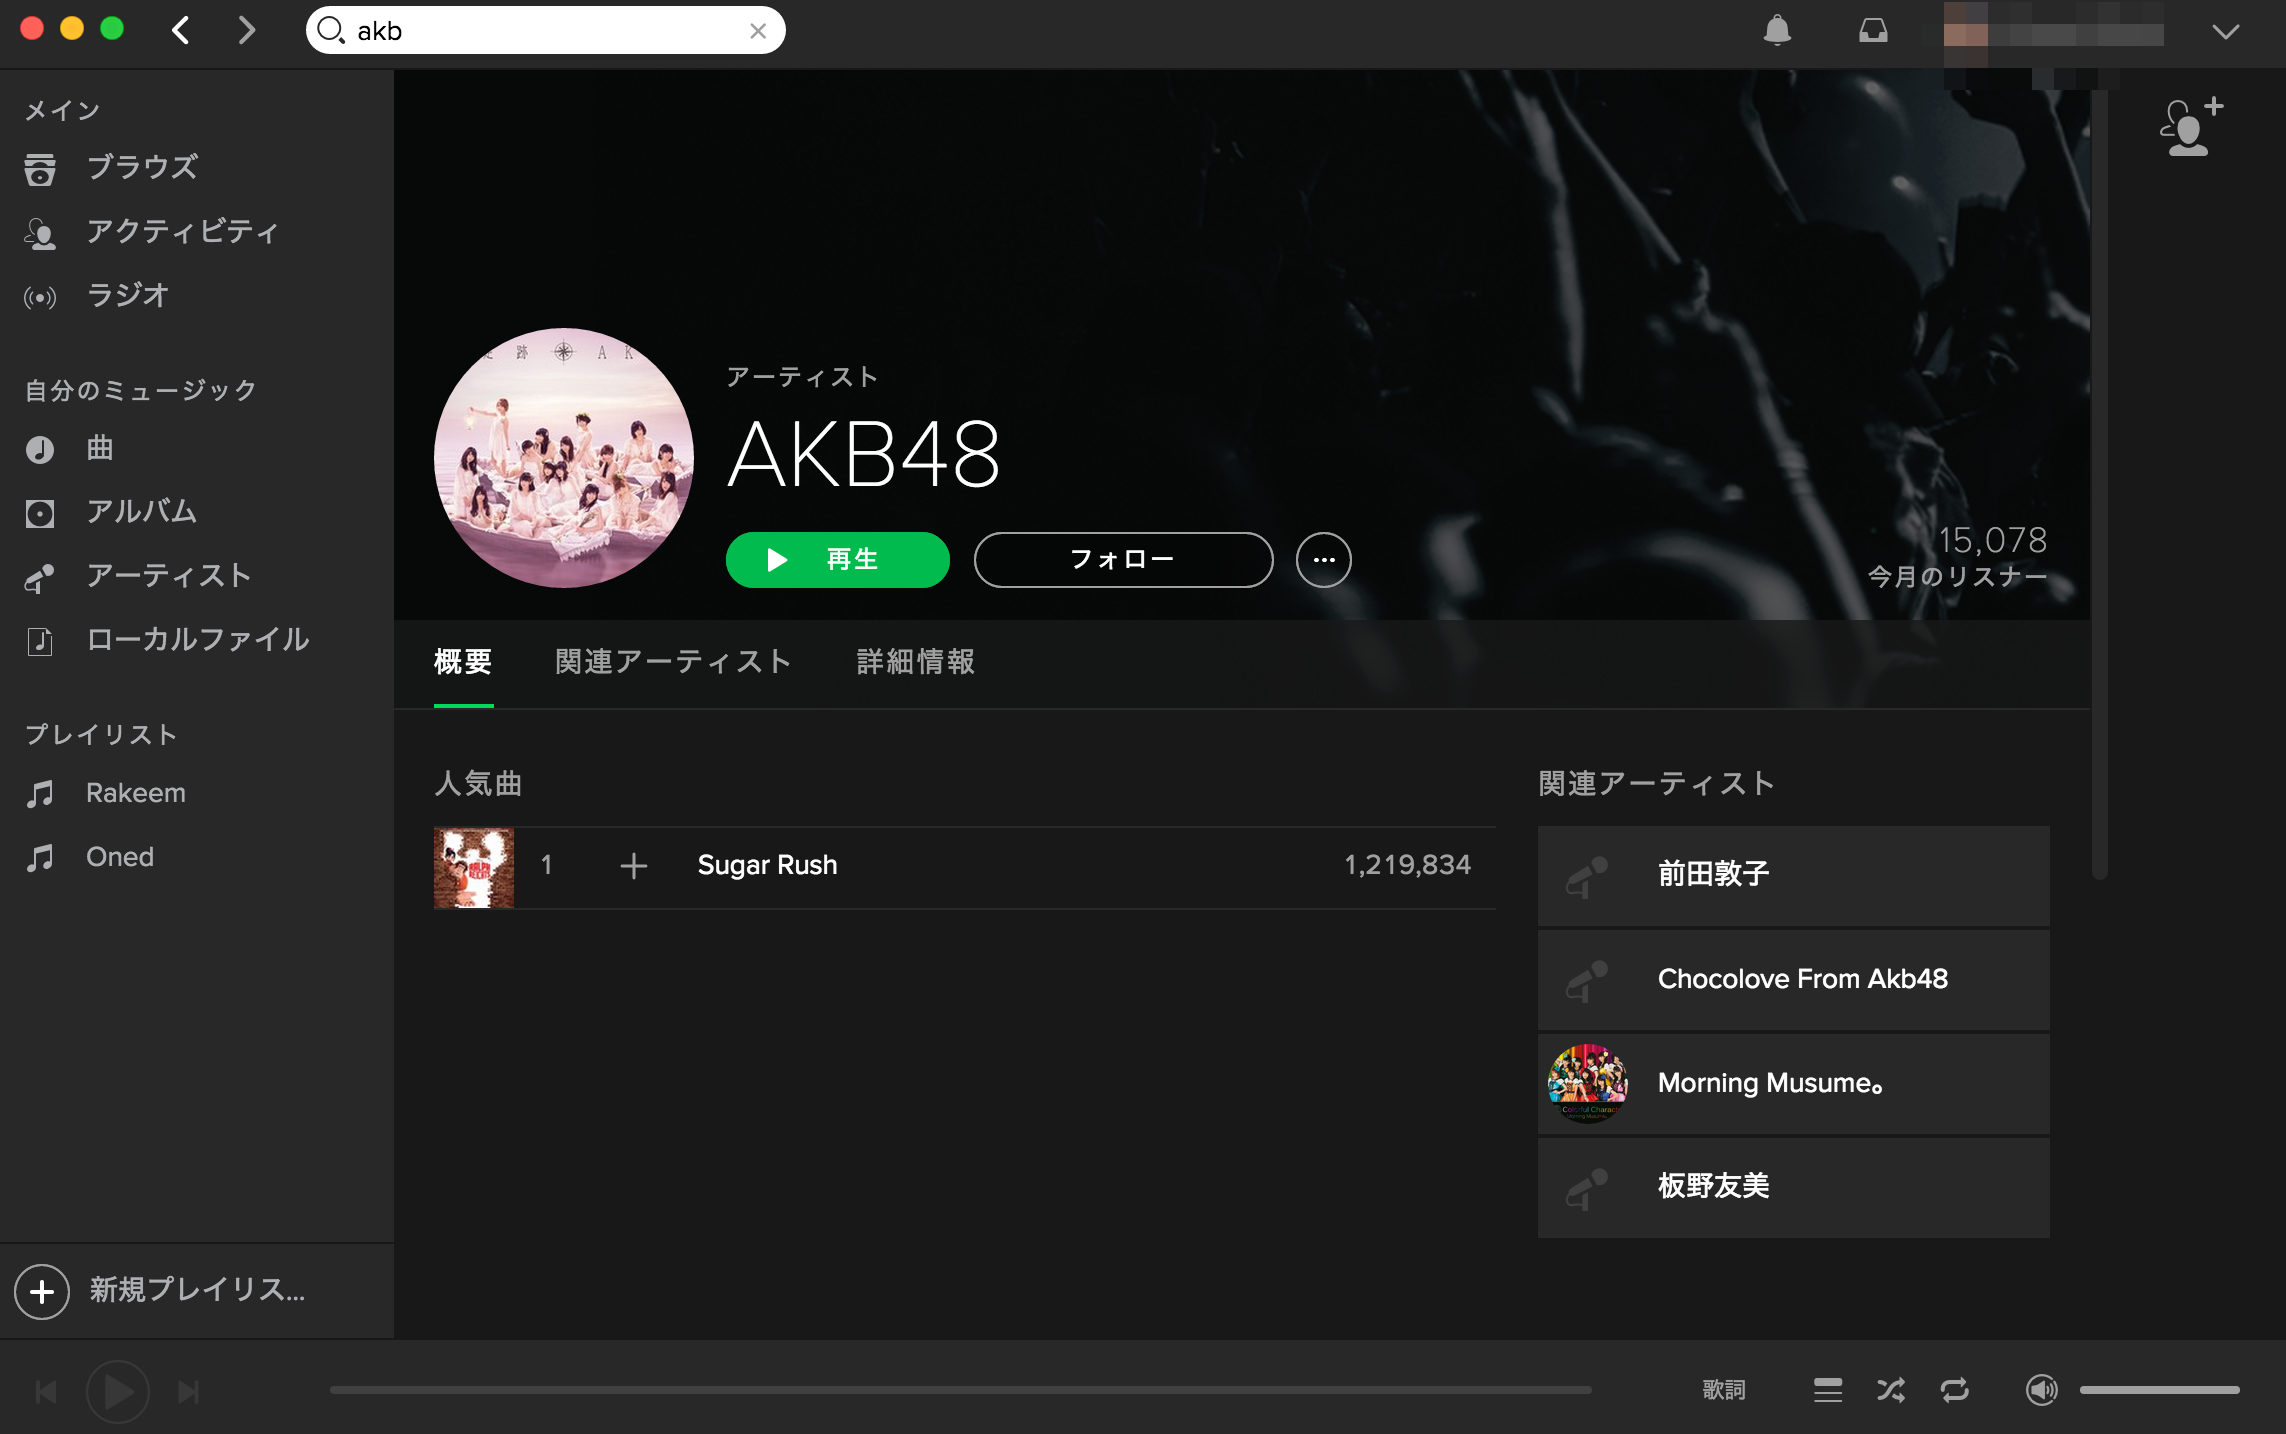 ちなみに無駄に日本のアーティストということで「AKB48」で検索してみたが、1曲しかなかったｗｗｗ